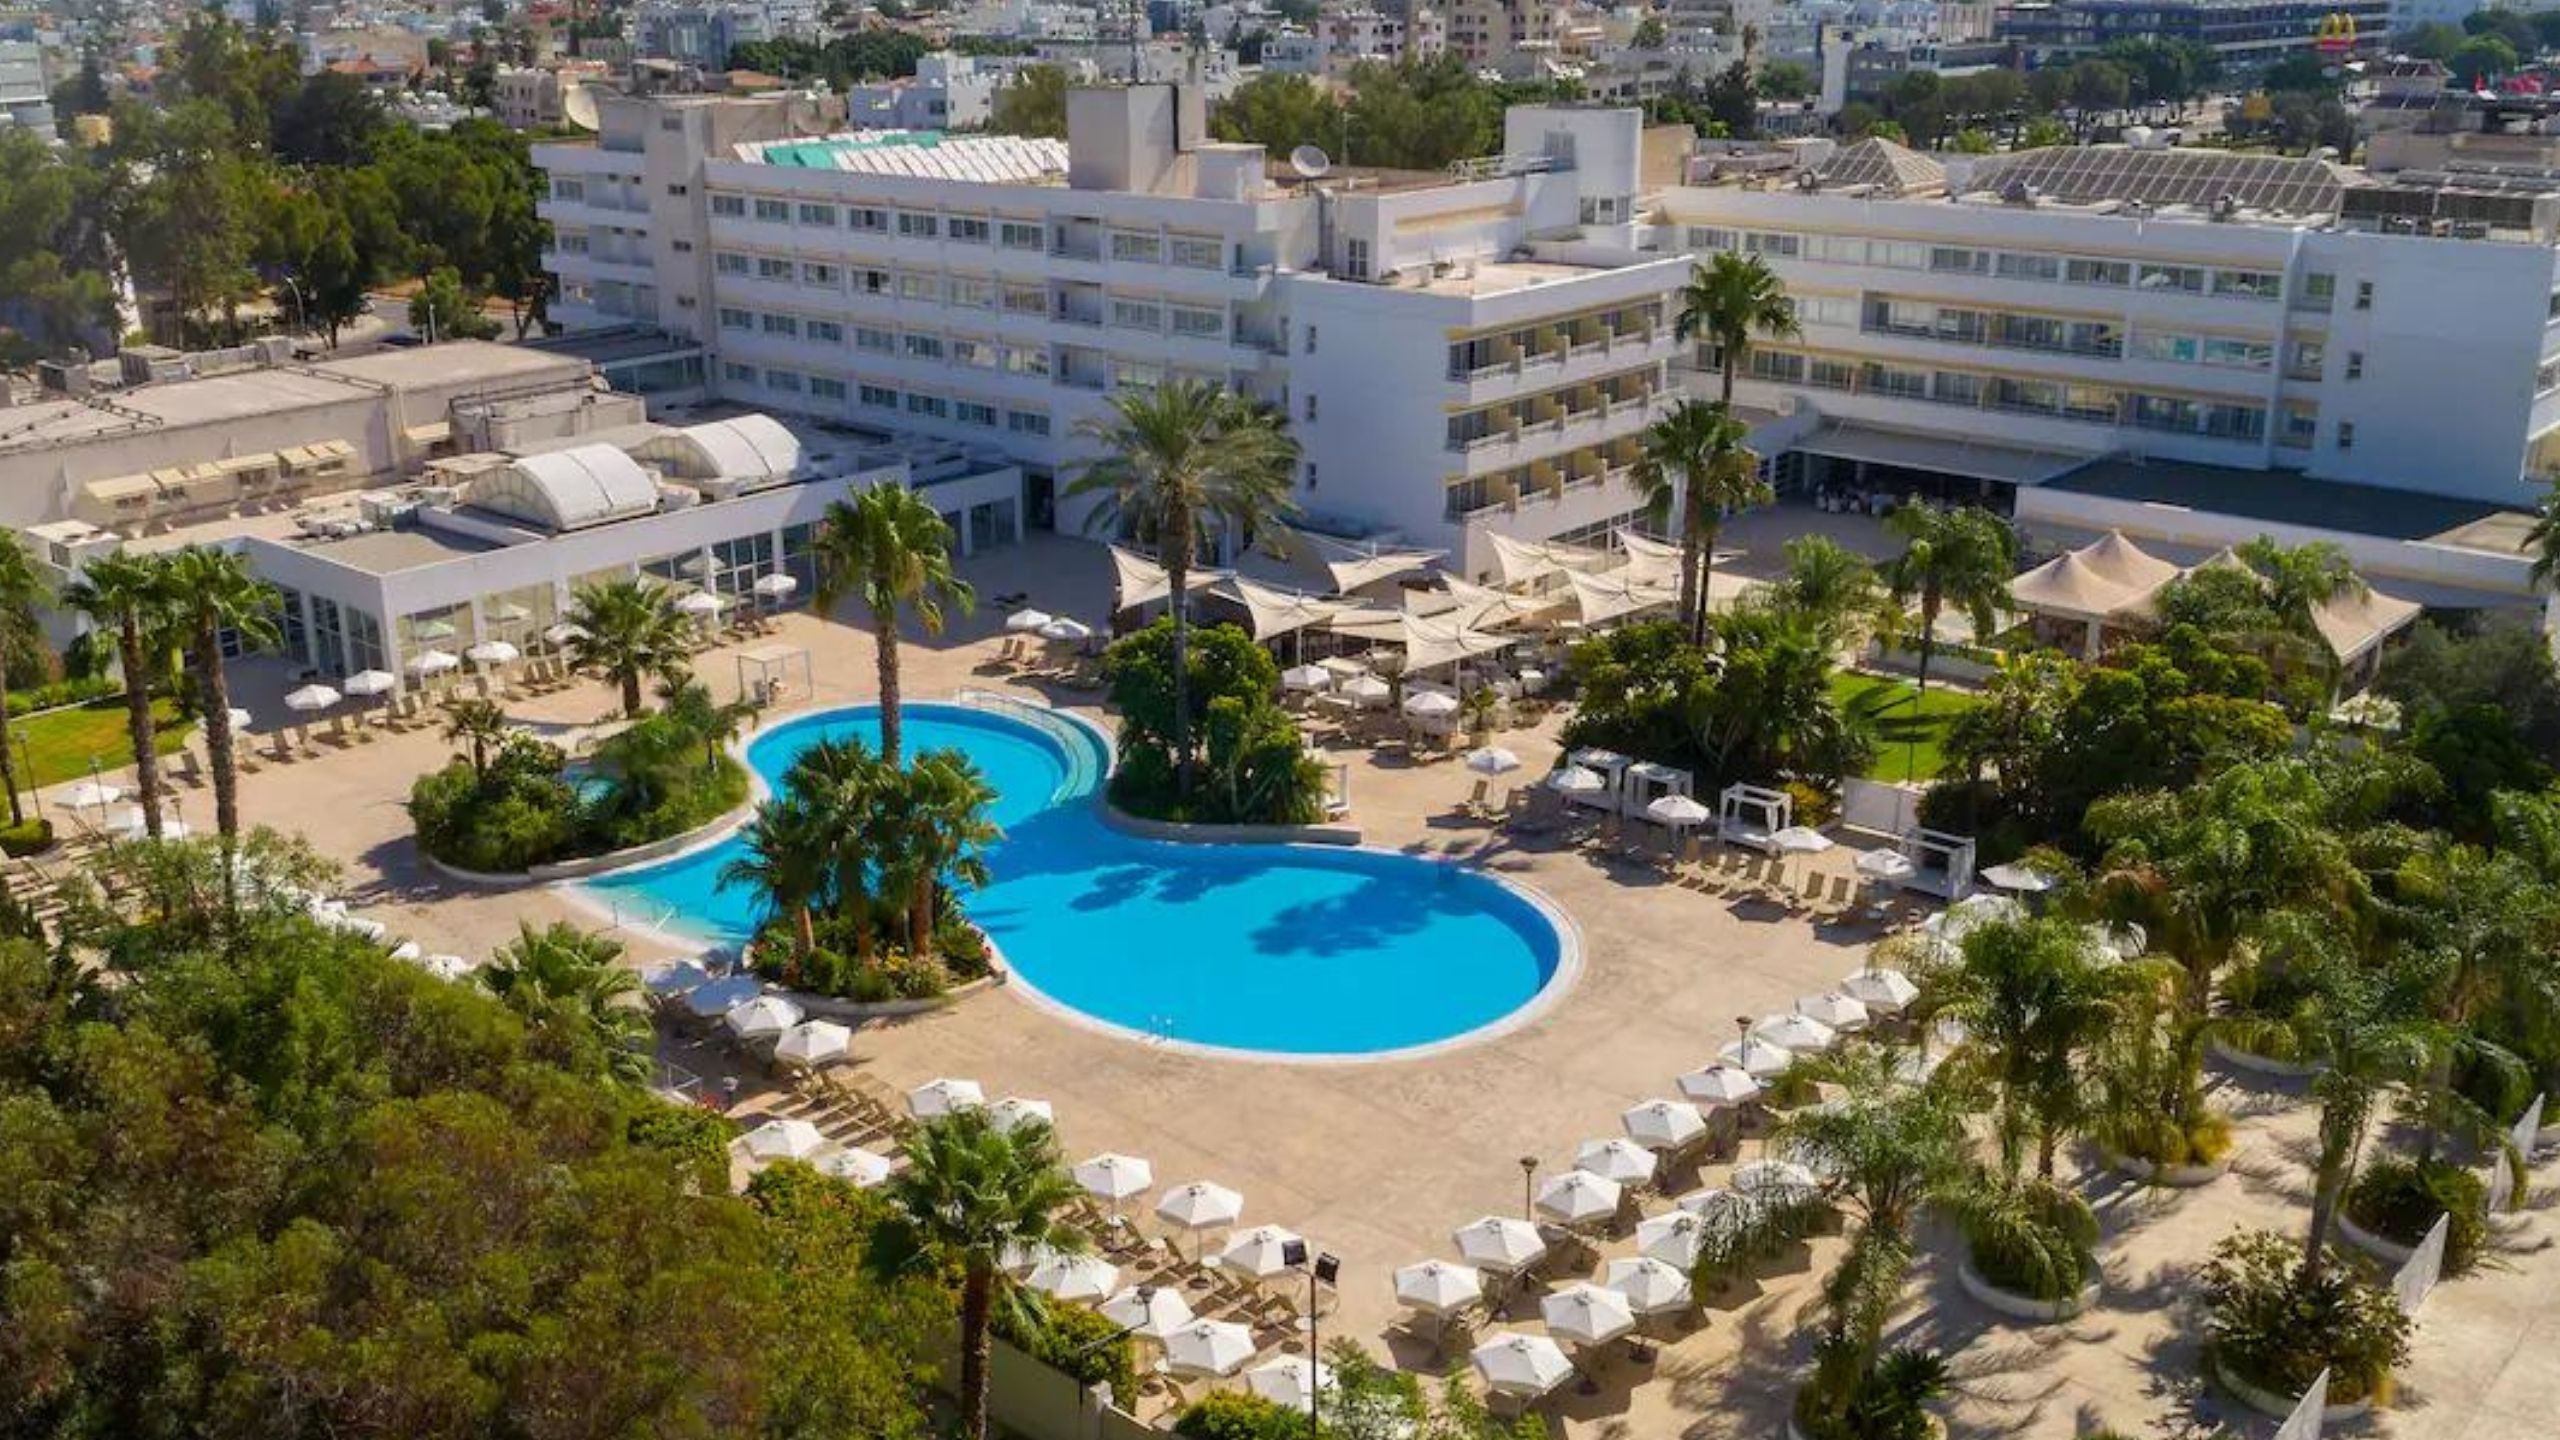 Hilton Nicosia in Cyprus